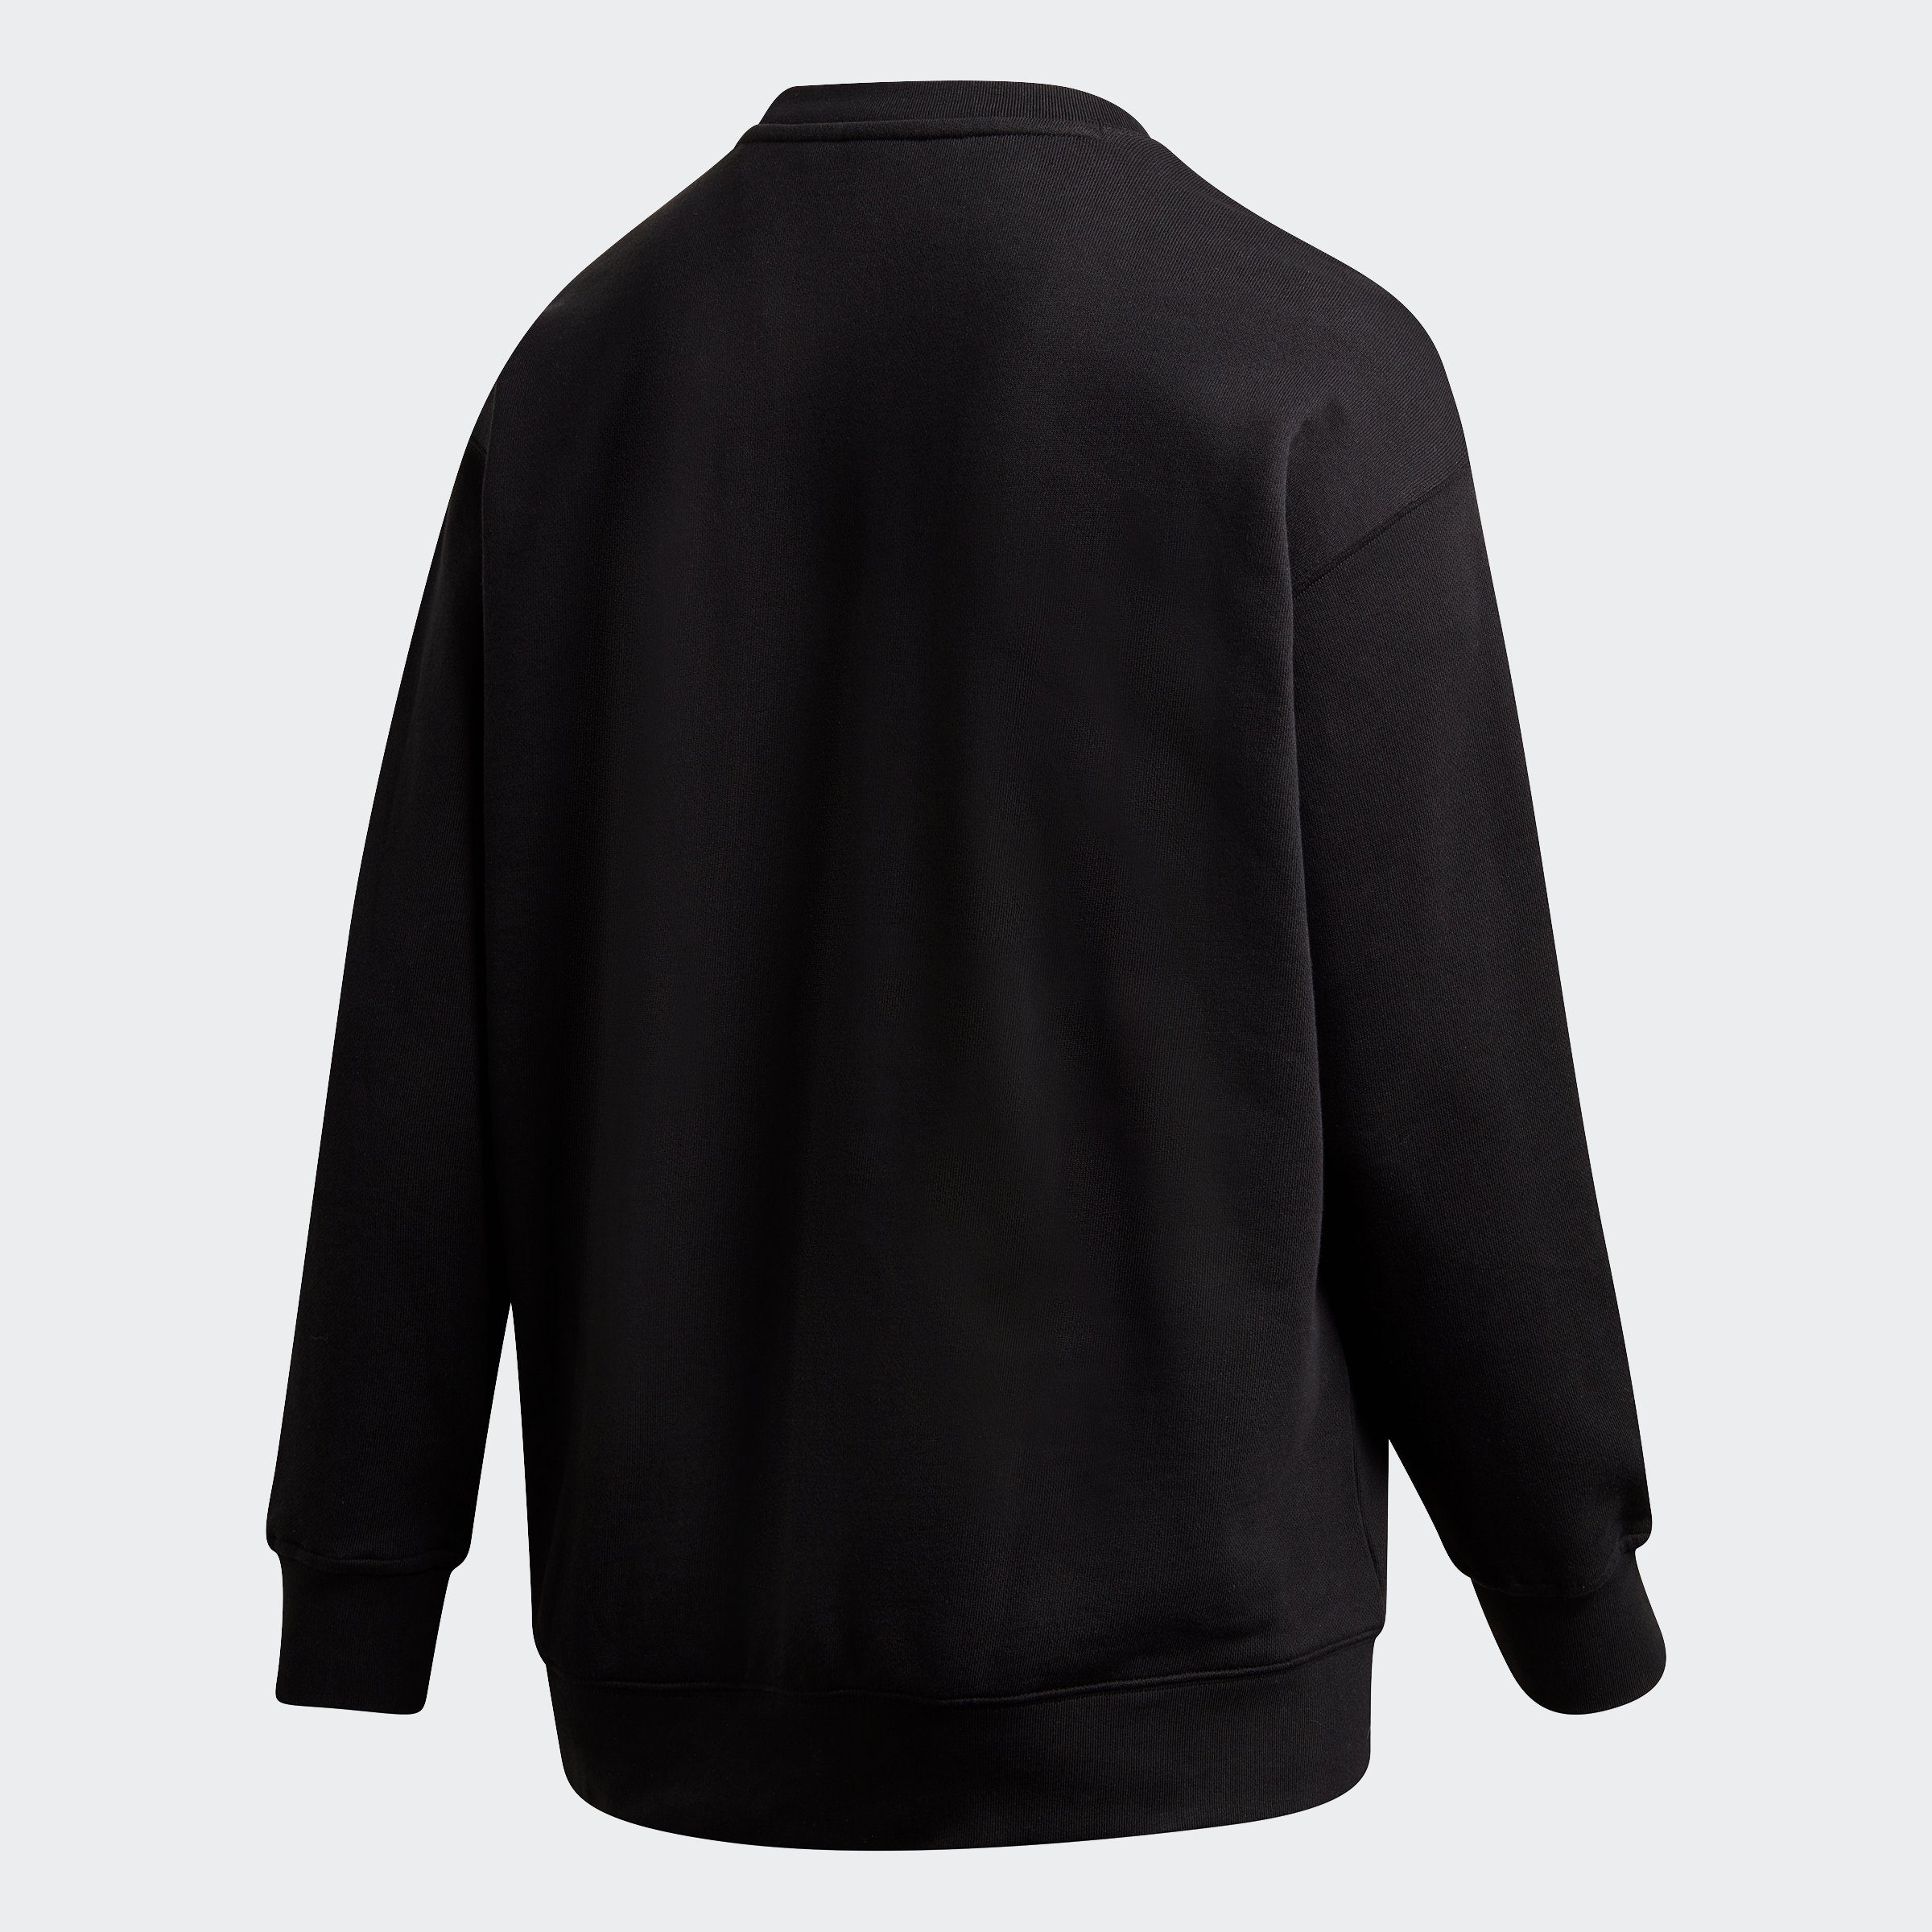 GROSSE – Sweatshirt BLACK/WHITE GRÖSSEN TREFOIL adidas Originals